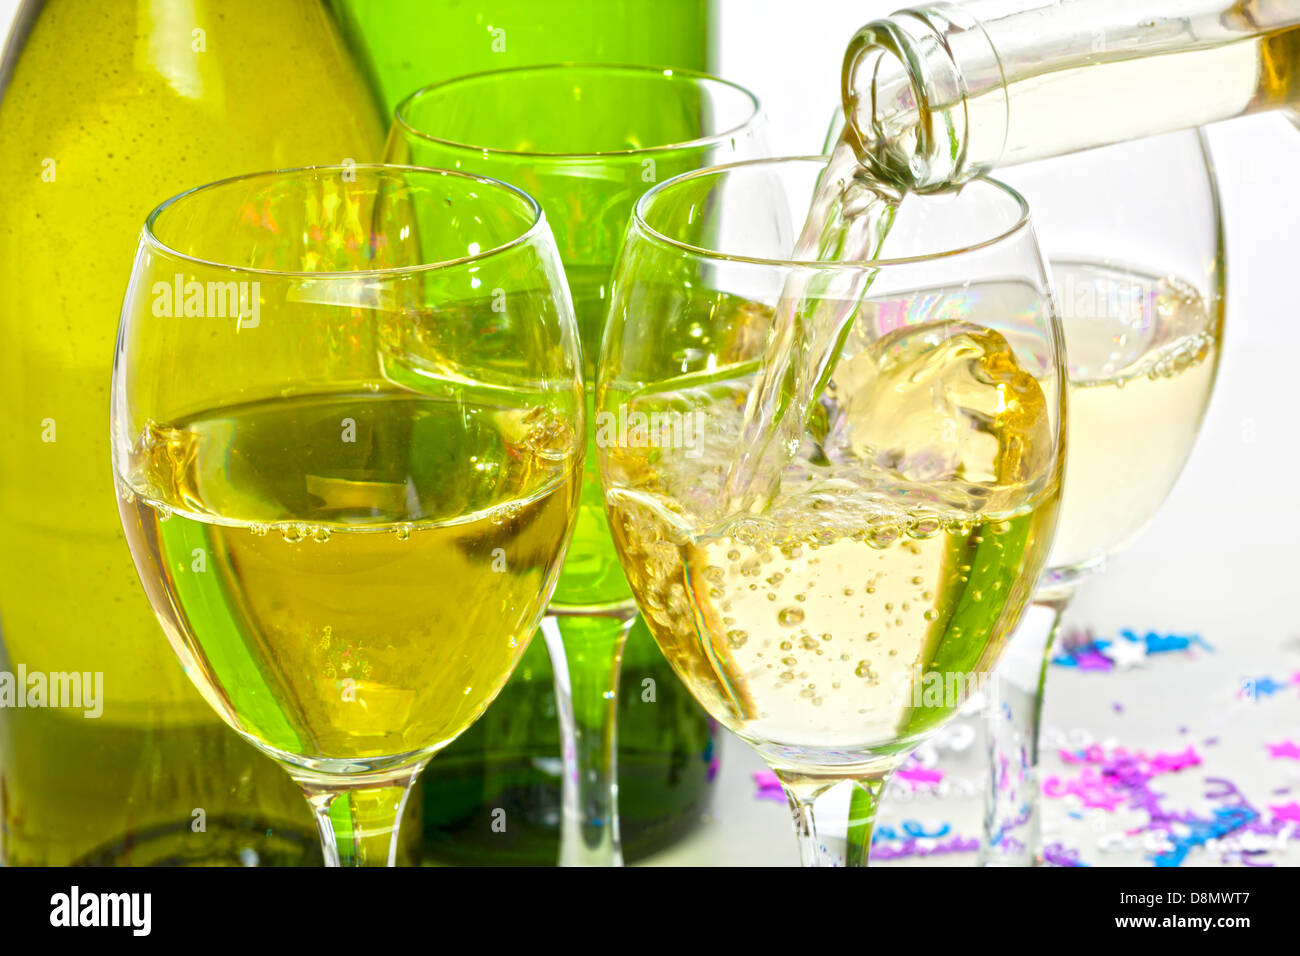 Vino bianco versando in bicchieri - vino bianco che viene versato in bicchieri a parte. Foto Stock